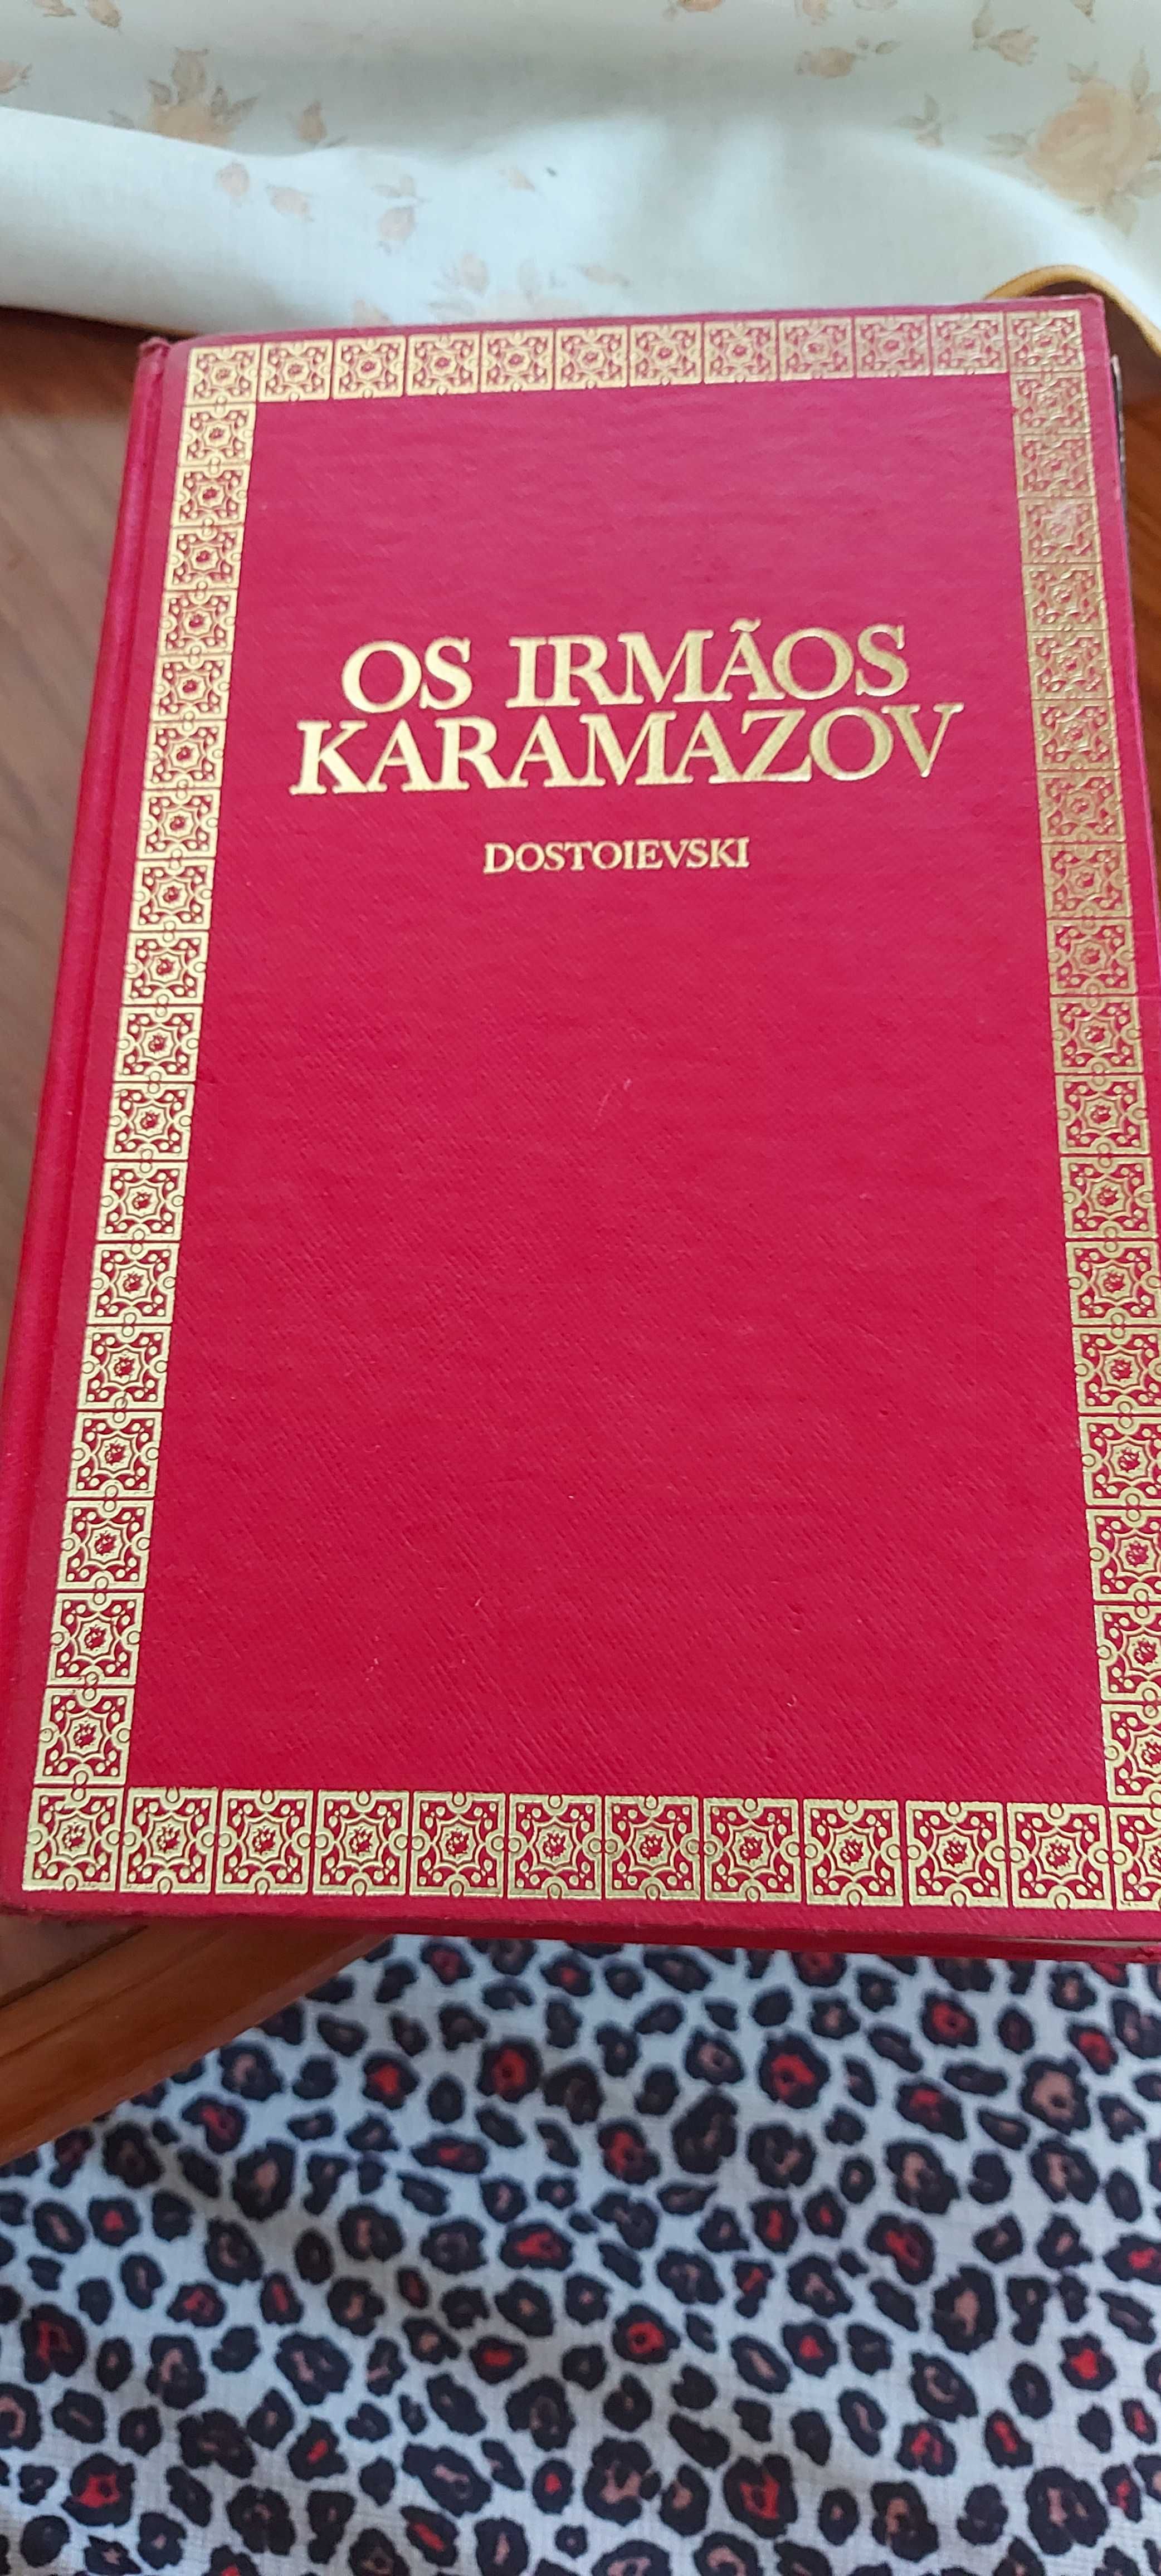 Livro "os irmãos karamazov"